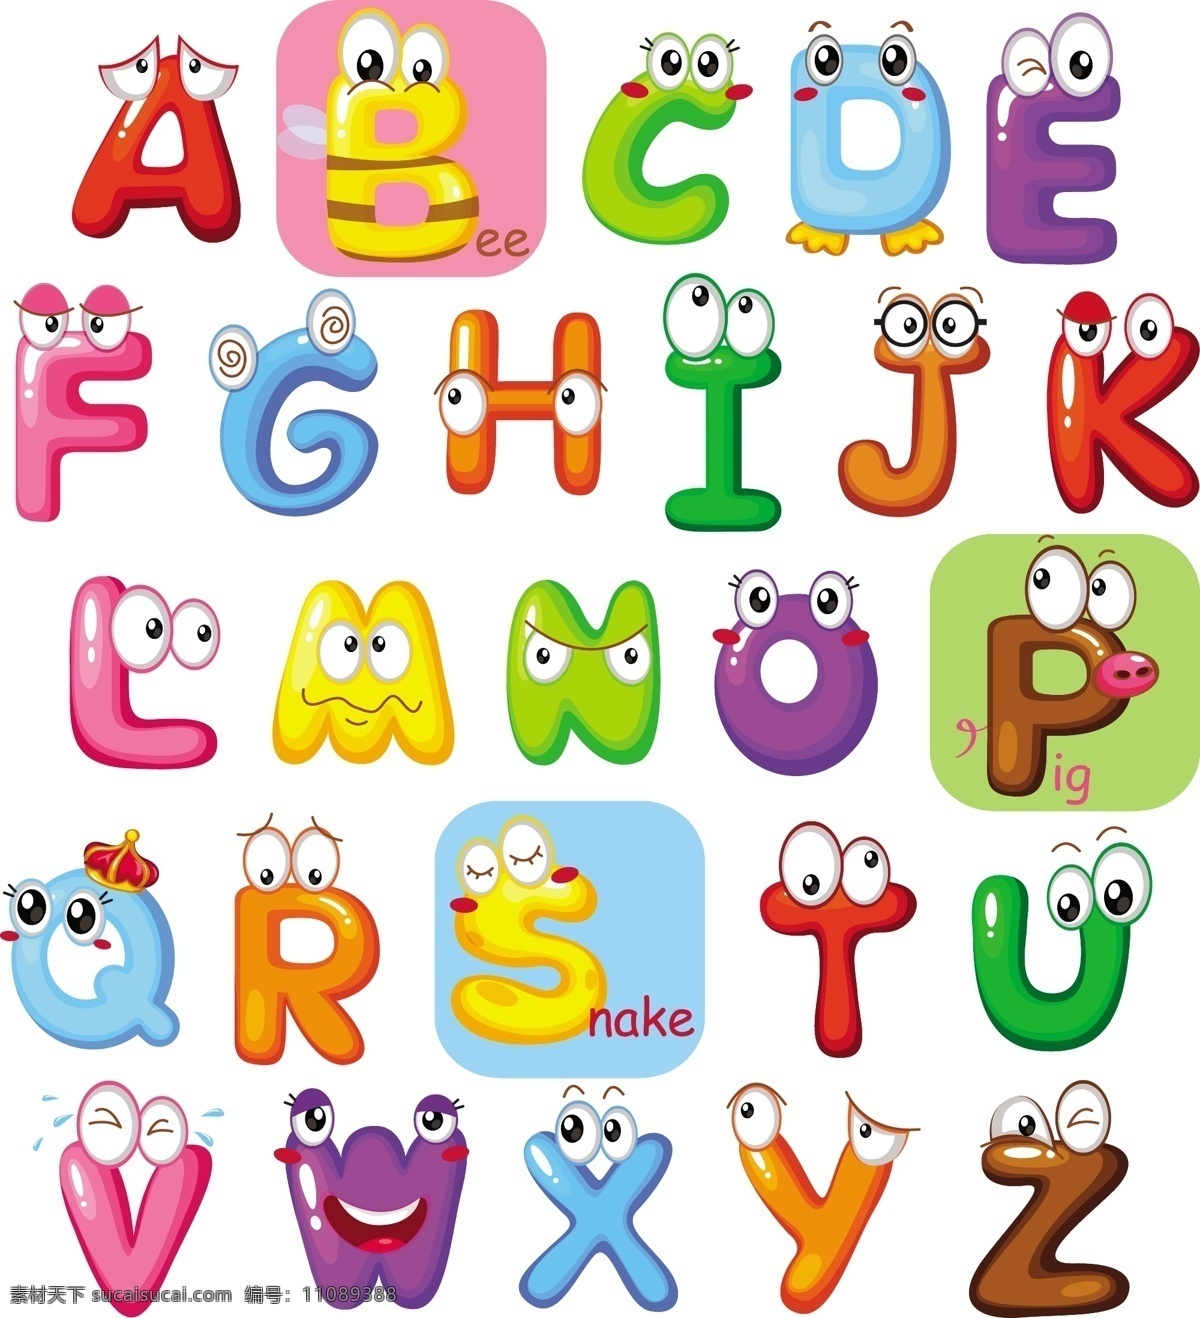 可爱英文字母 卡通字母 可爱字母 英文字母 创意字体 设计艺术字 眼睛 动漫 幼儿学习素材